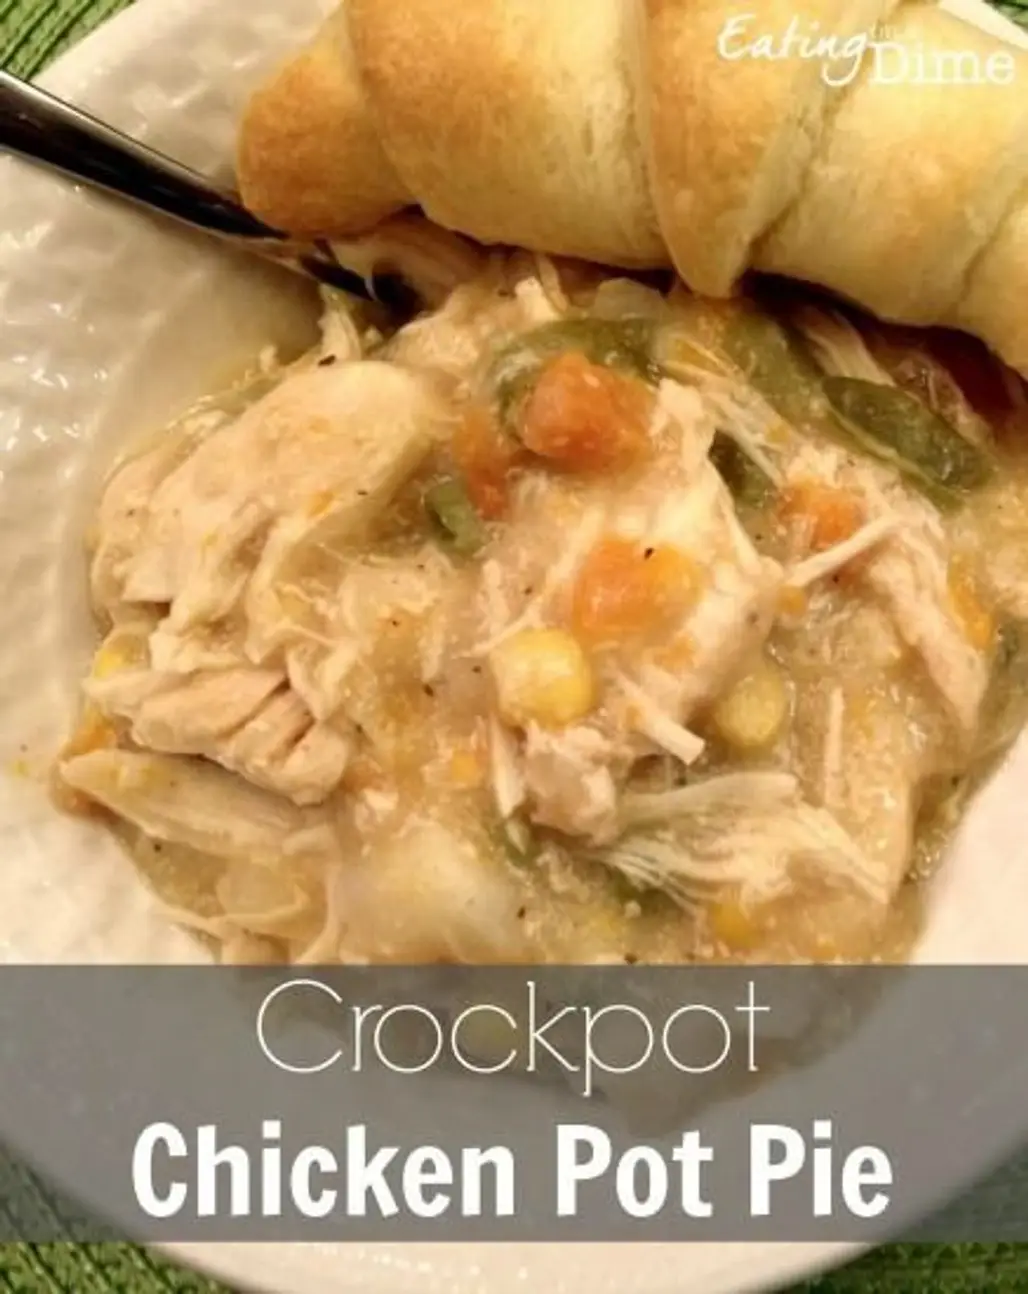 Crockpot Chicken Pot Pie